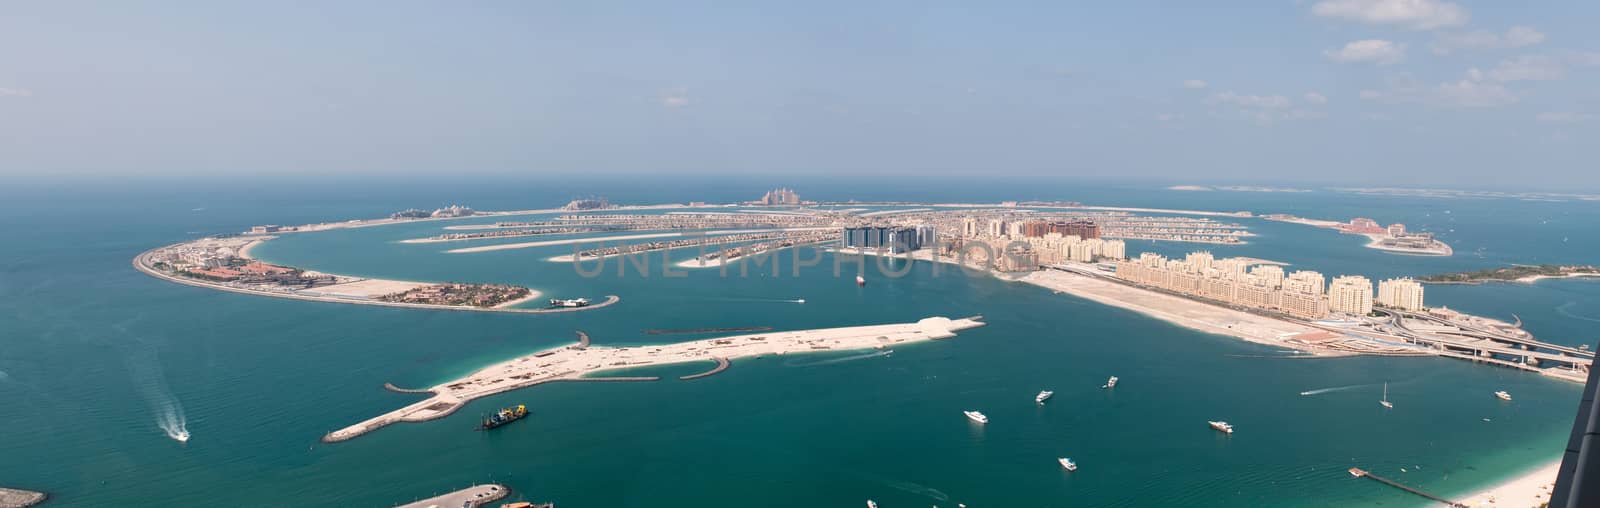 View on artificial island Palm Jumeirah, Dubai, United Arab Emirates